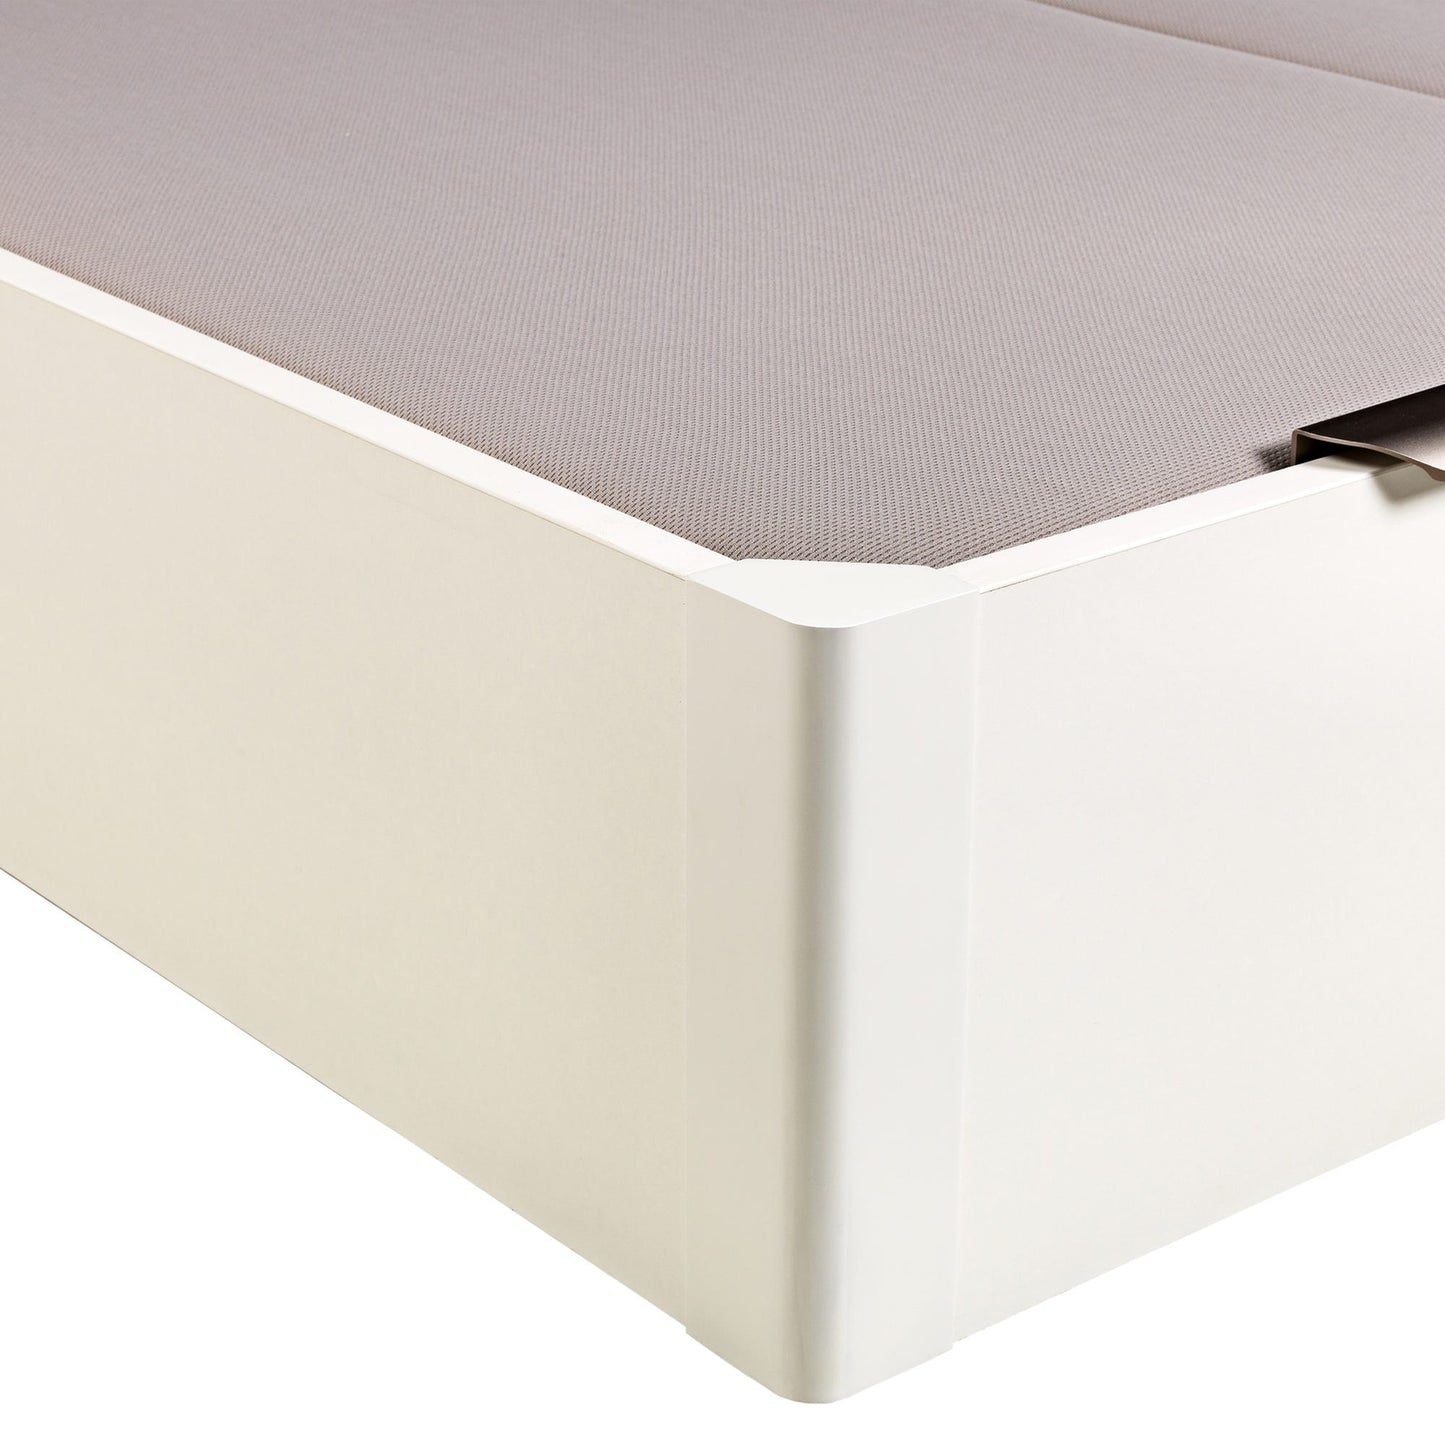 Canapé abatible de madera de tapa doble de color blanco - DESIGN - 200x220